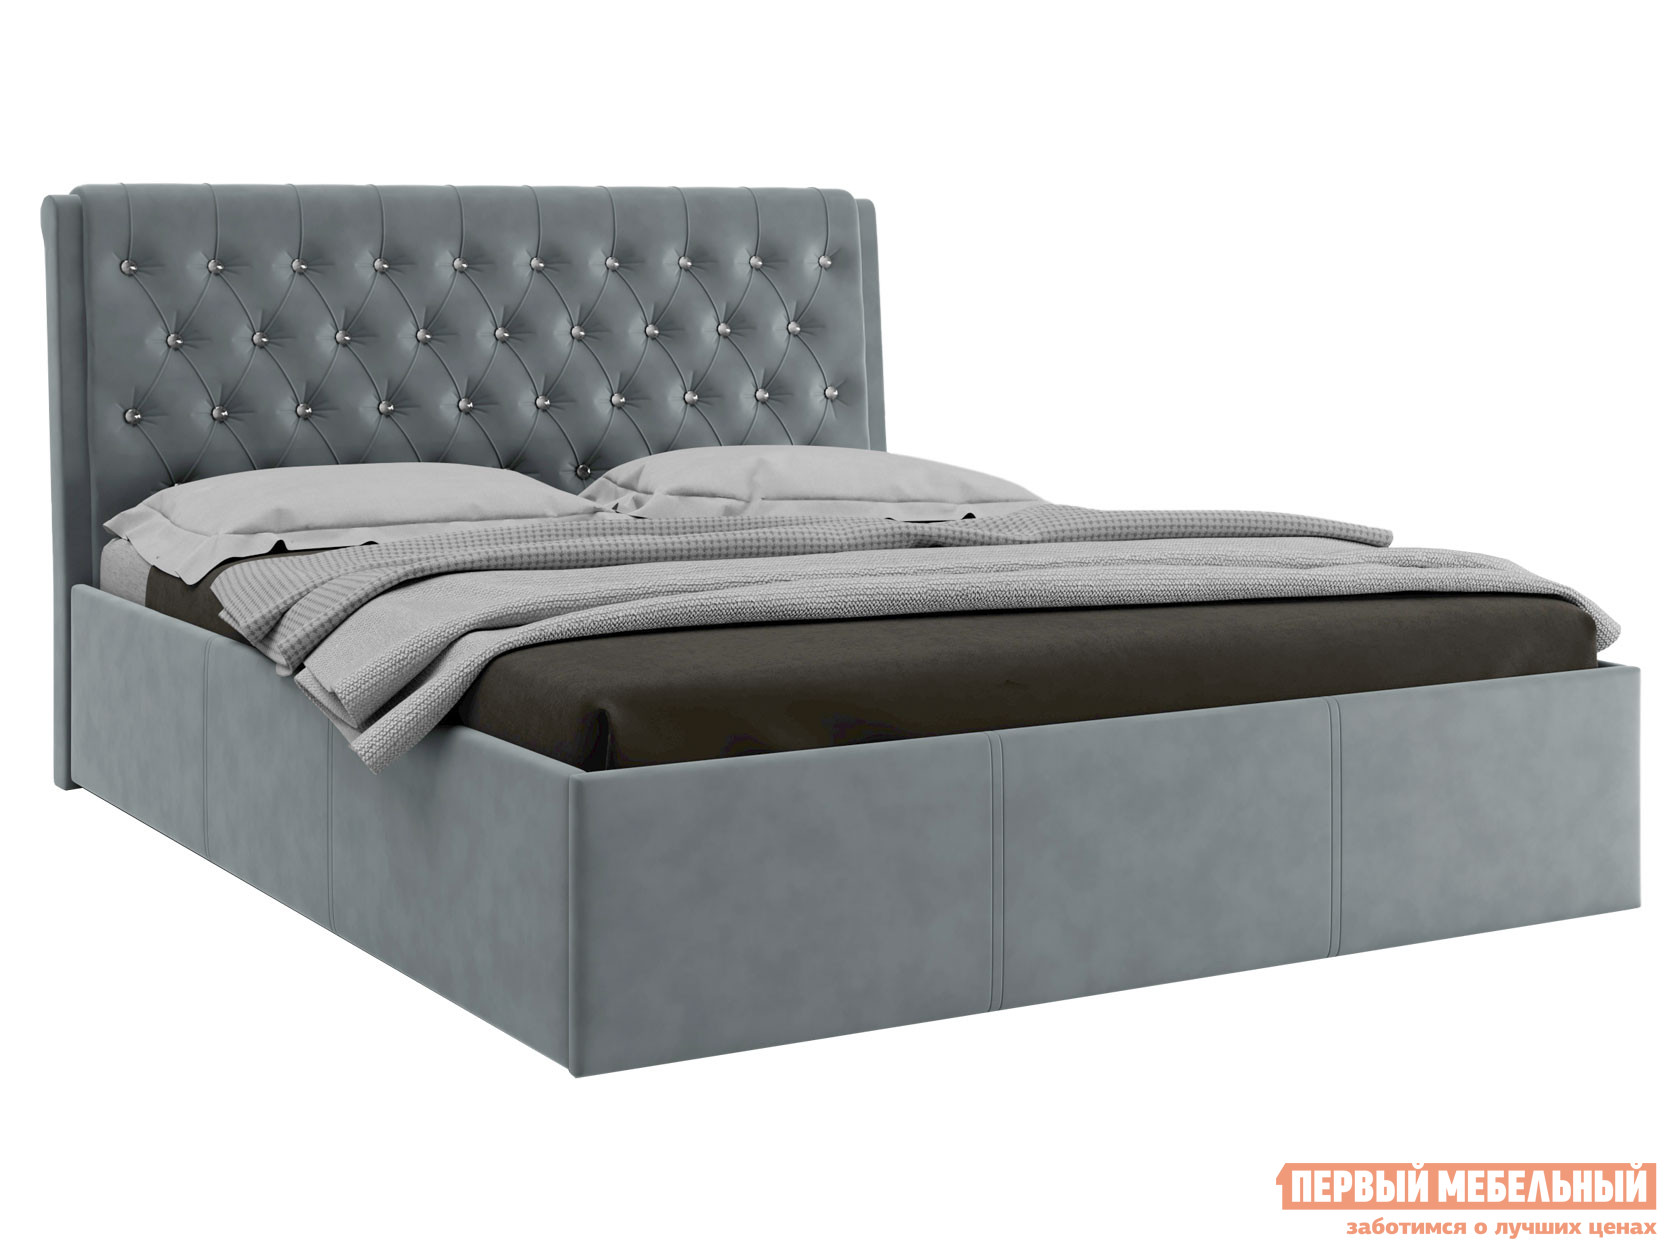 Двуспальная кровать  Прима ПМ Серый, велюр, 160х200 см